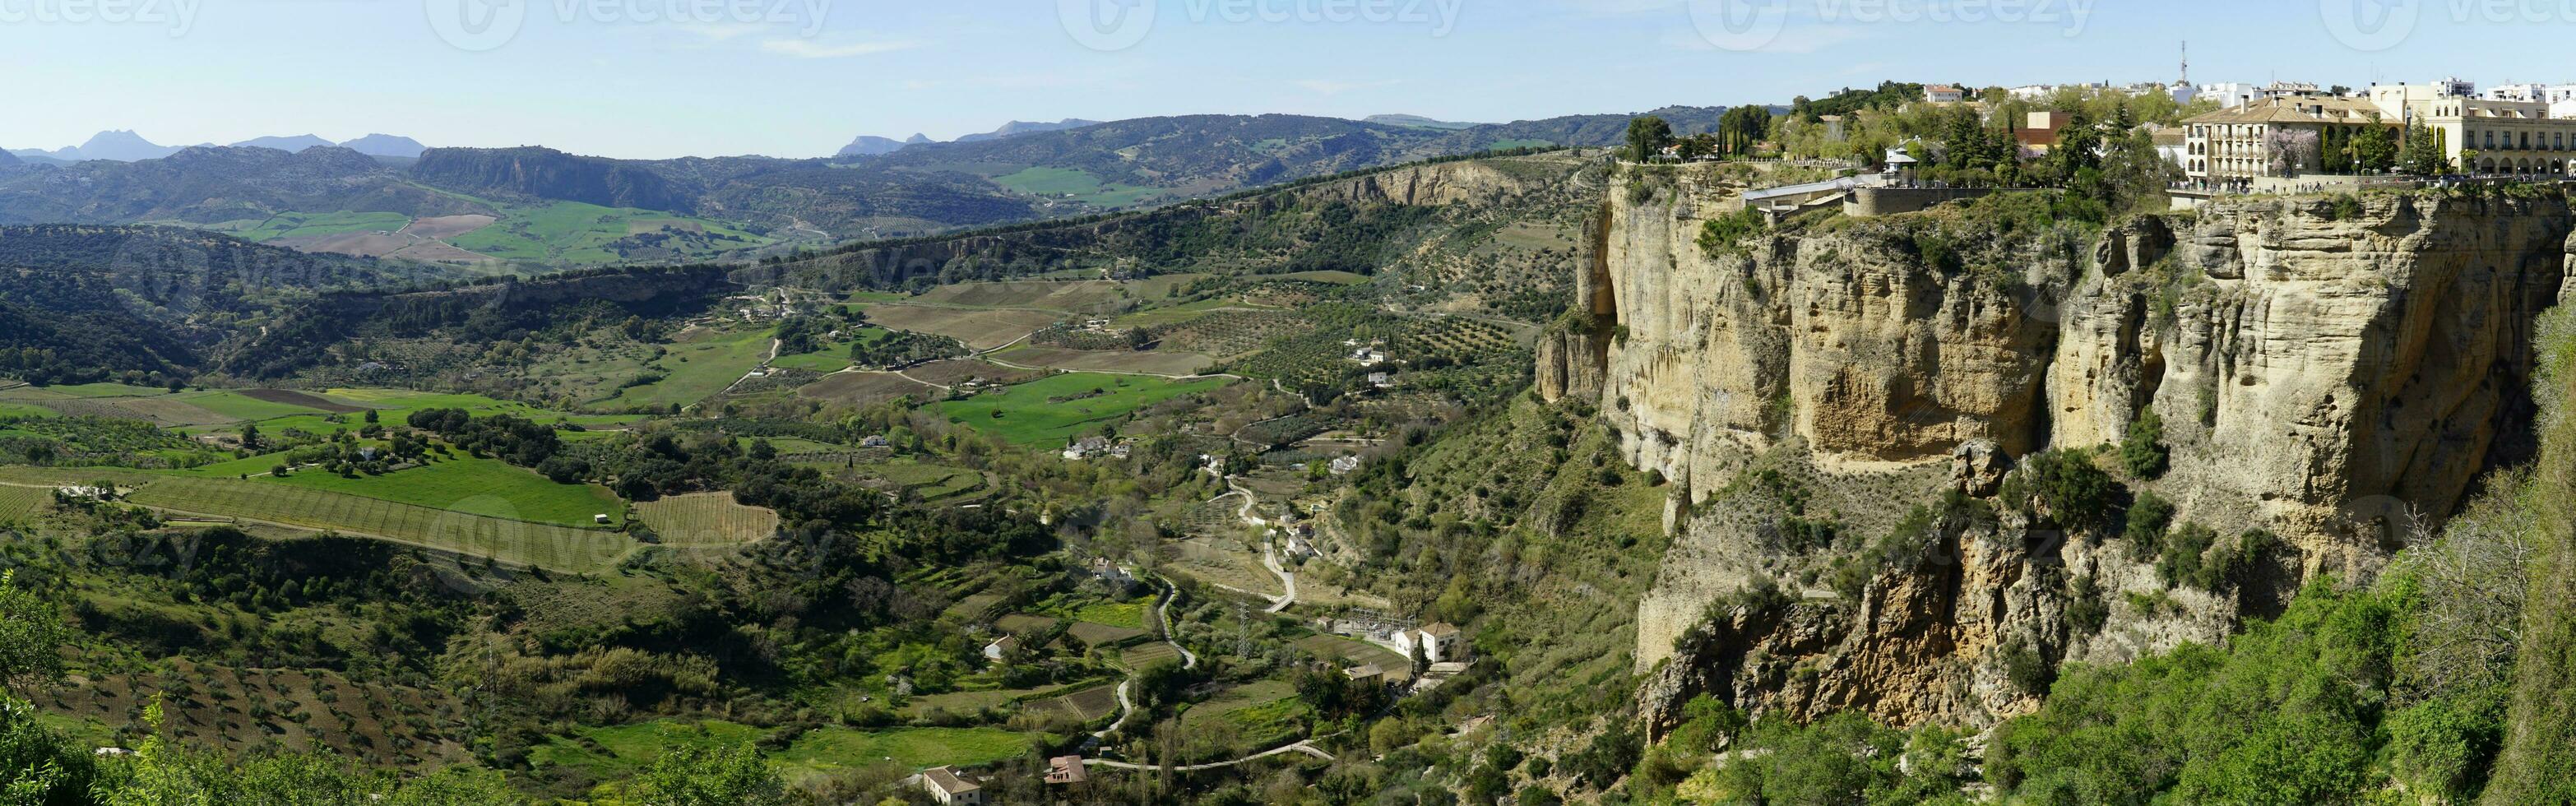 Häuser auf ein Cliff und Senke im Ronda, Andalusien, Spanien - - Panorama foto